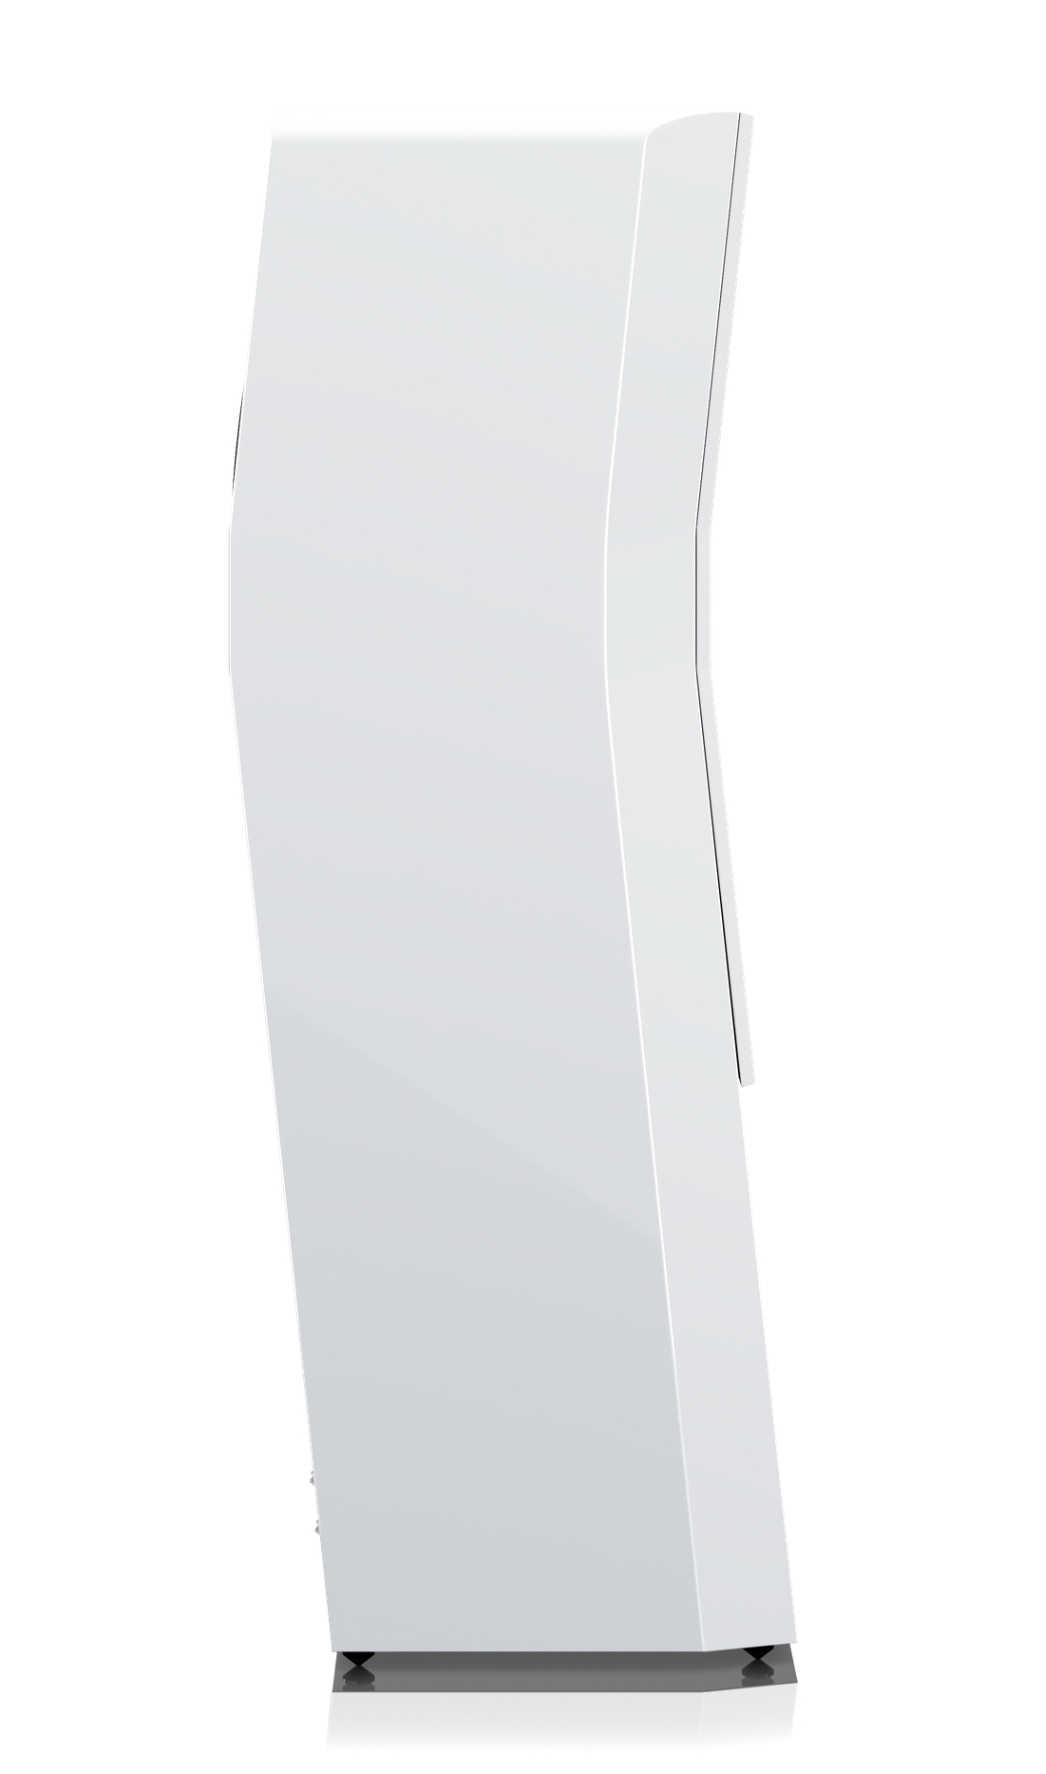 SVS Ultra Evolution Titan Floorstanding Speaker in Piano Gloss White, profile